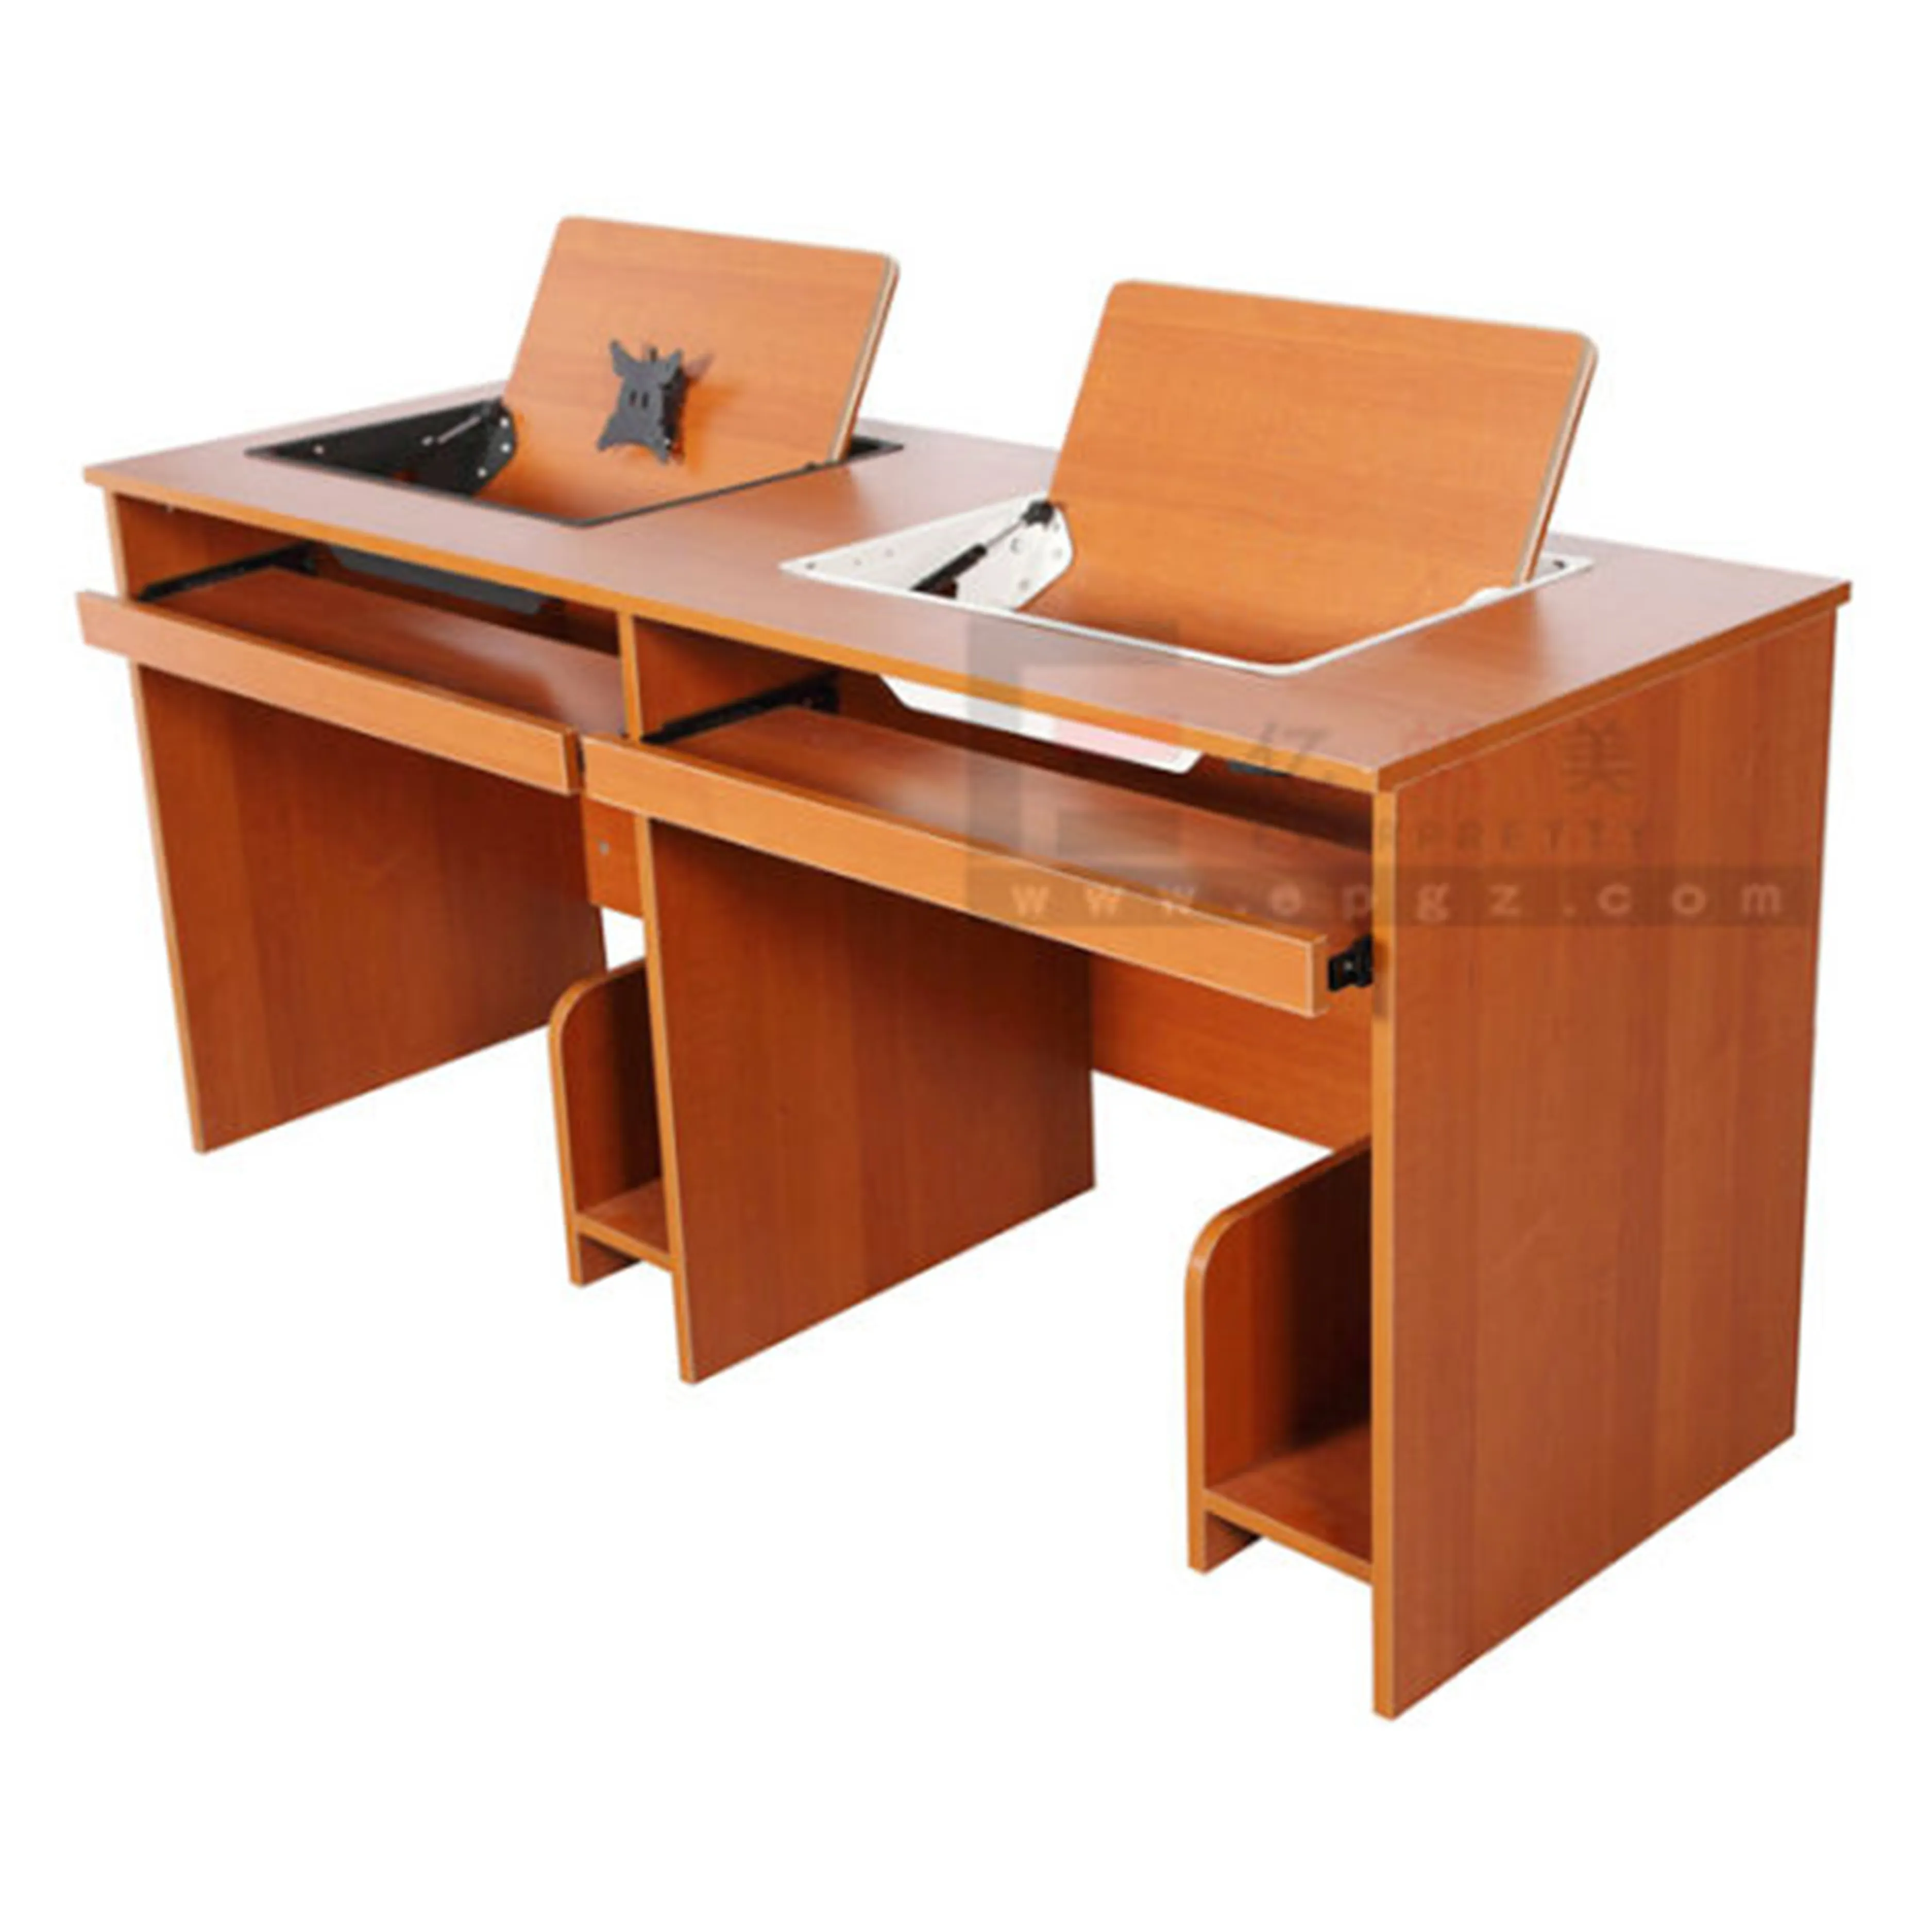 Design moderno Escritório Comercial Móveis Computadores De Madeira Mesa para duas pessoas